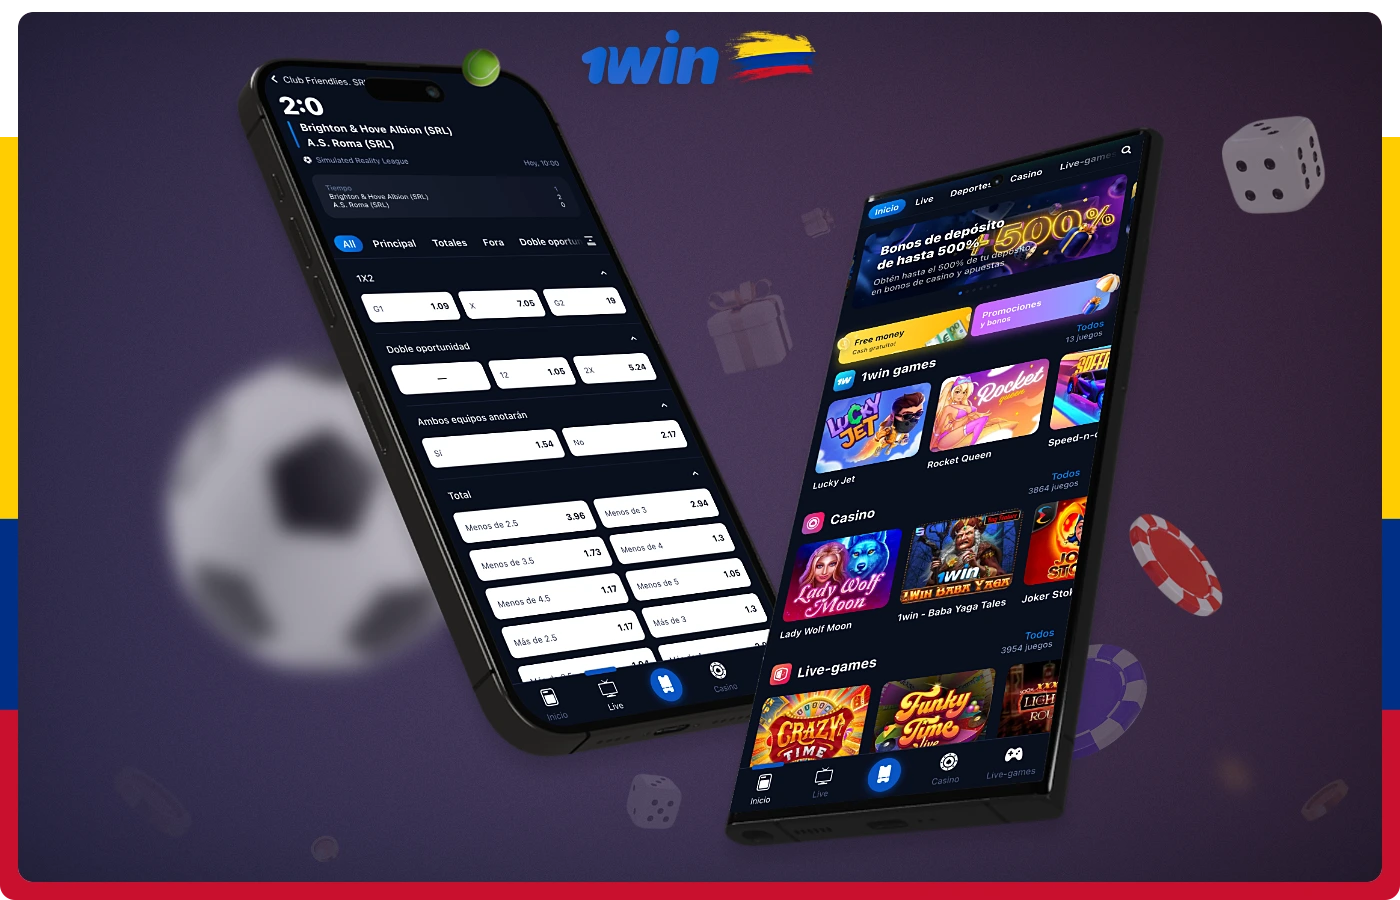 Descarga la app de 1win para Android e iOS en Colombia de forma totalmente gratuita desde la web oficial